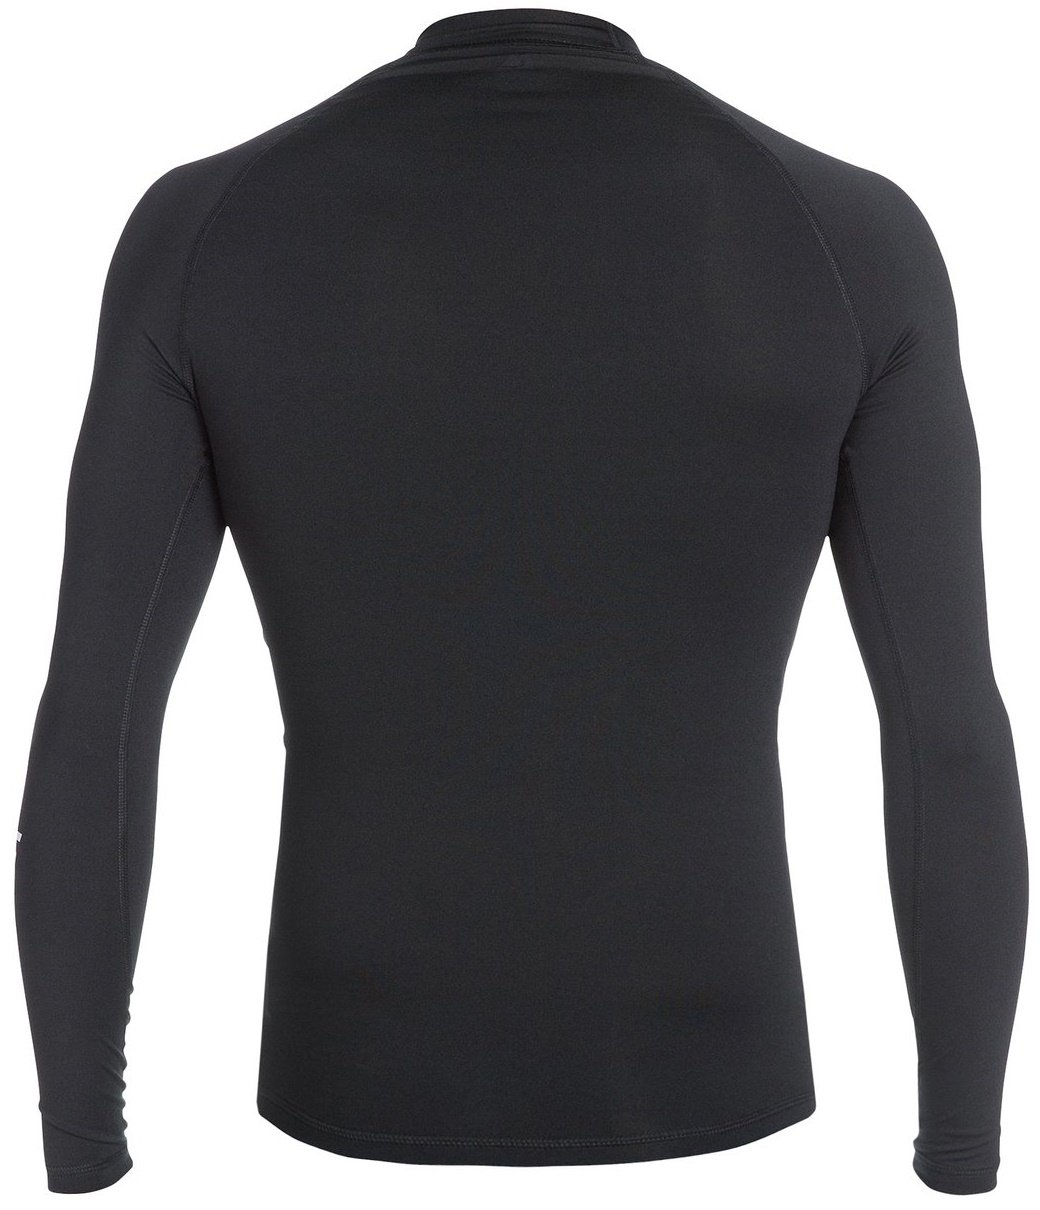 Quiksilver Men's Rashguard Long Sleeve All Time 50+ UV Protection - Black